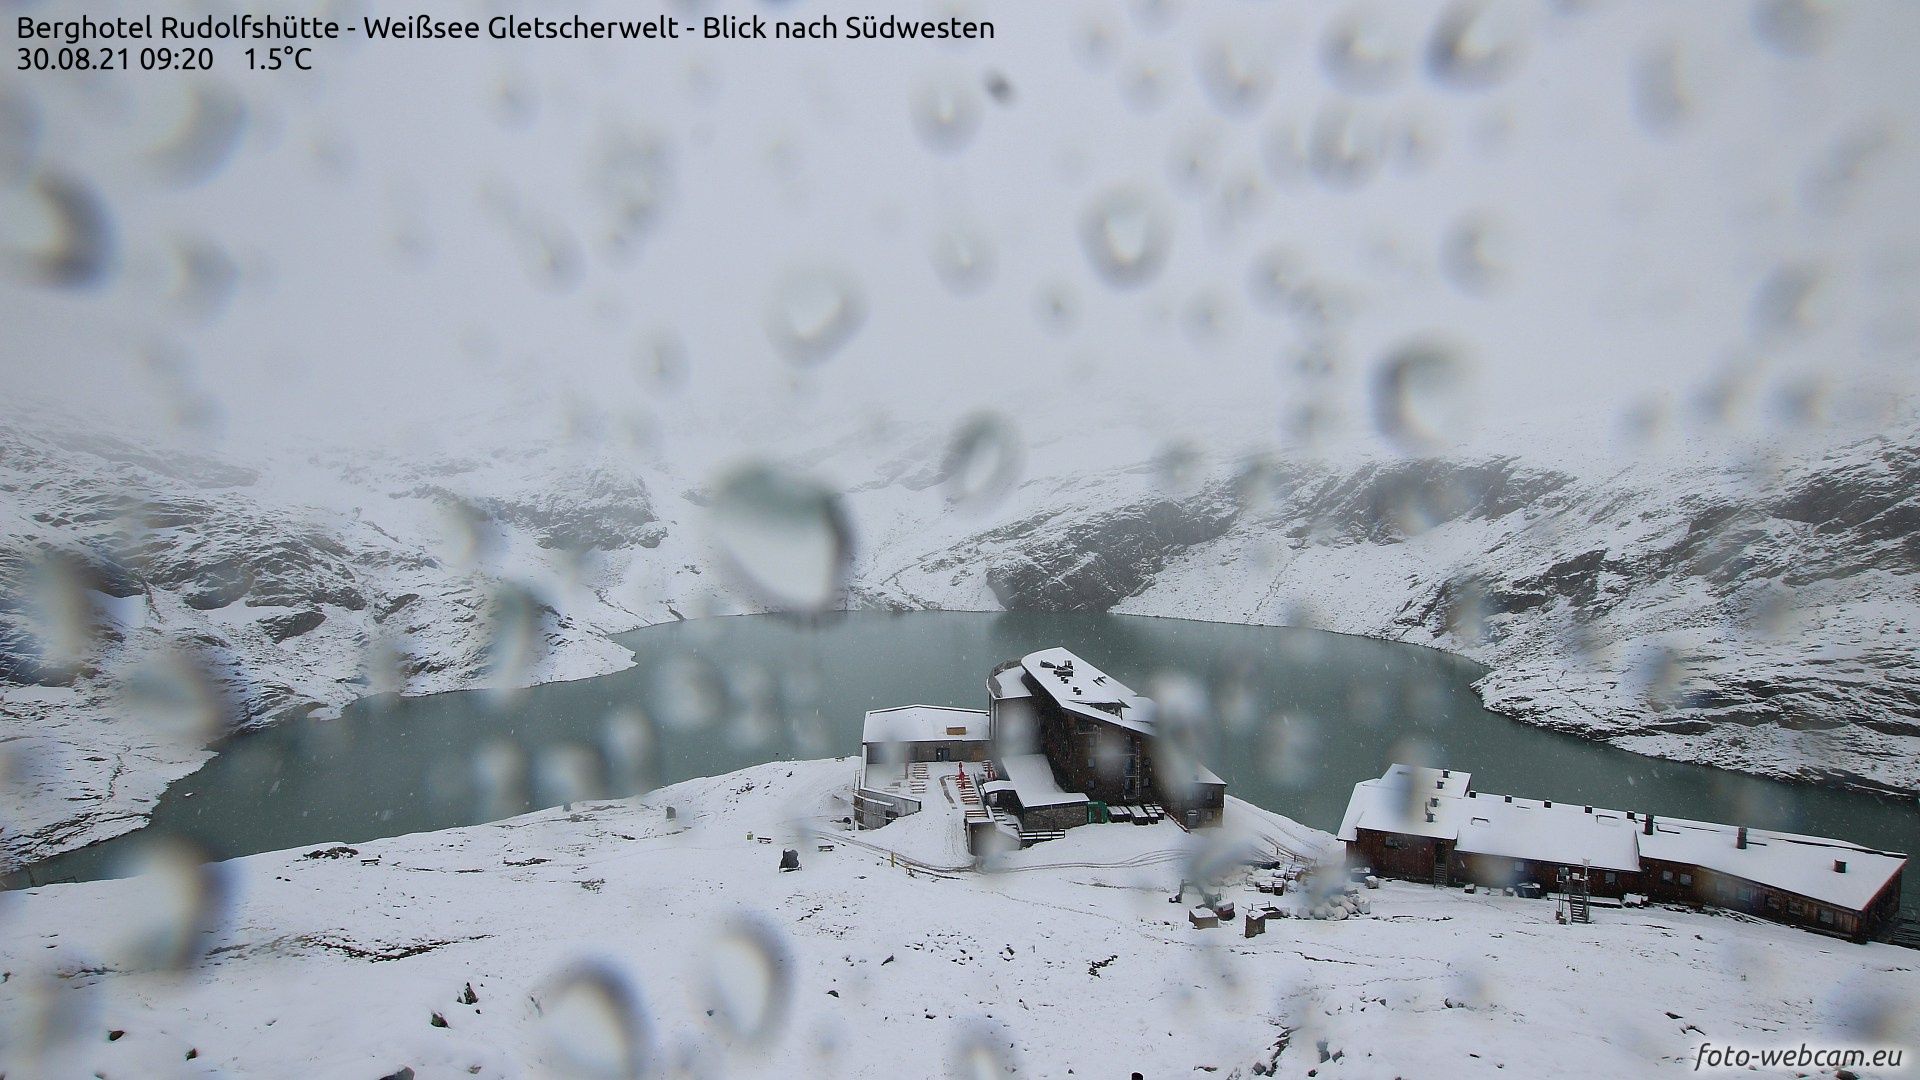 Rudolfshütte, Weißsee Gletscherwelt (foto-webcam.eu)